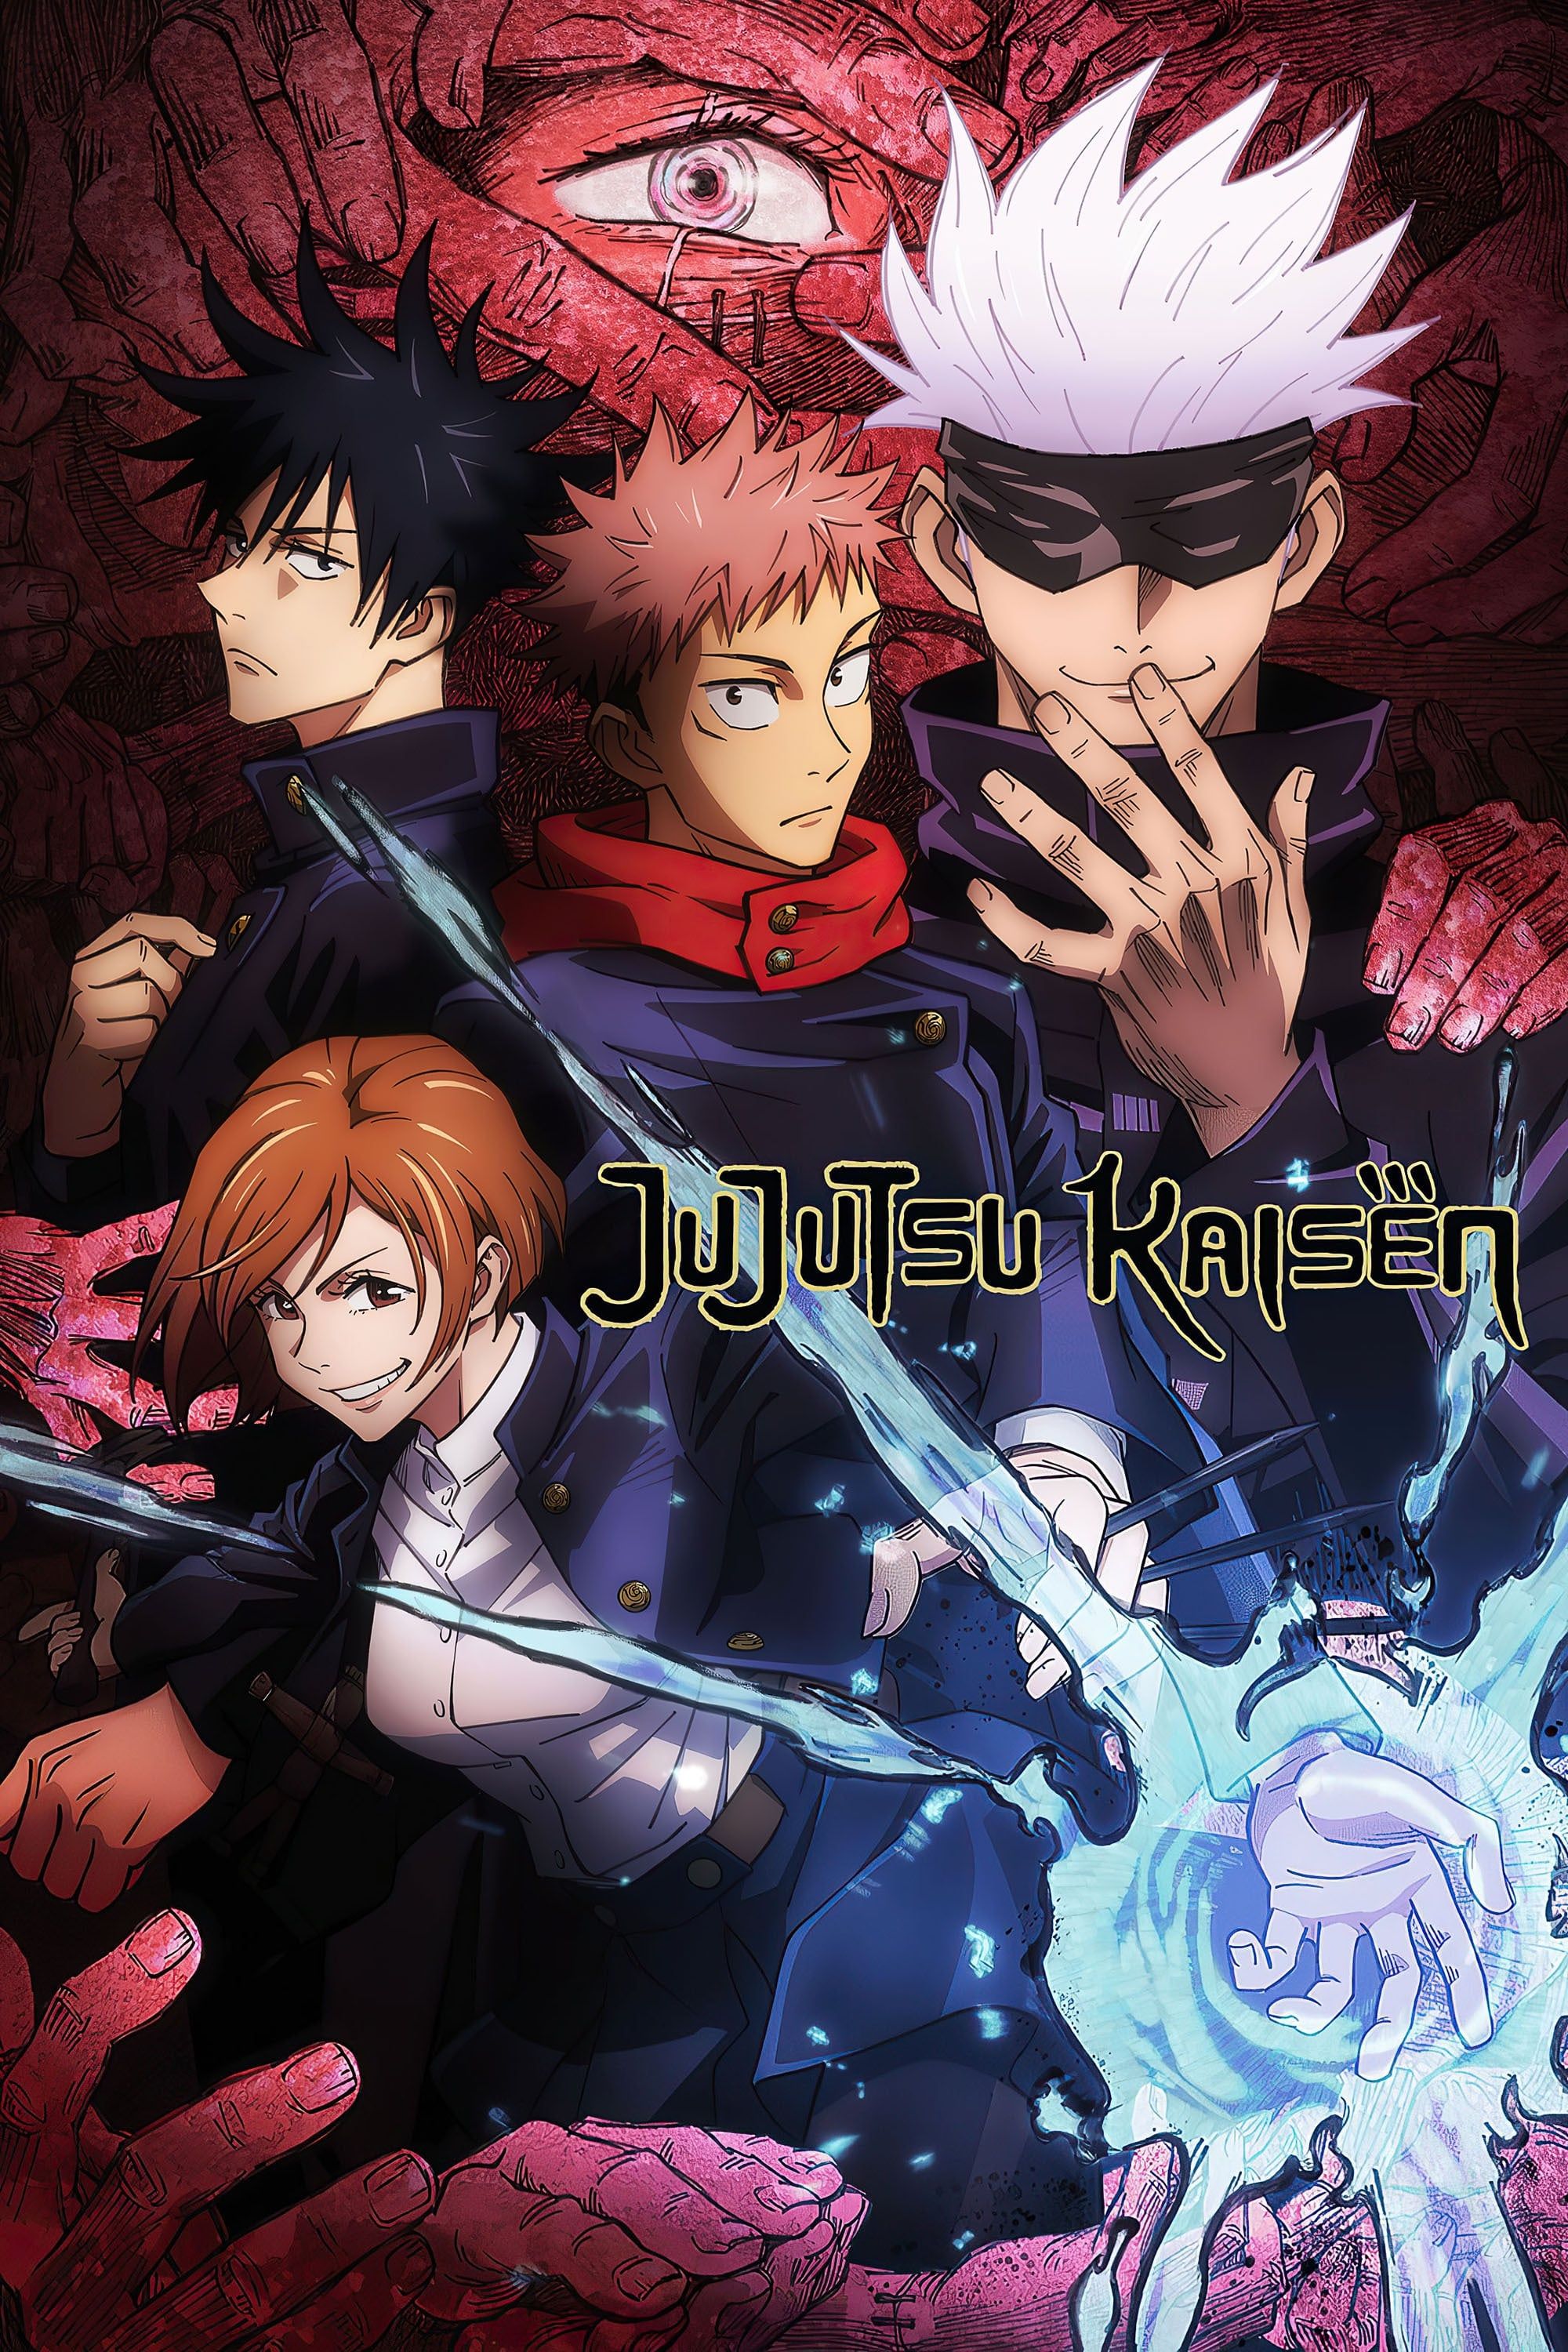 Los actores posan juntos en el cartel del anime Jujutsu Kaisen